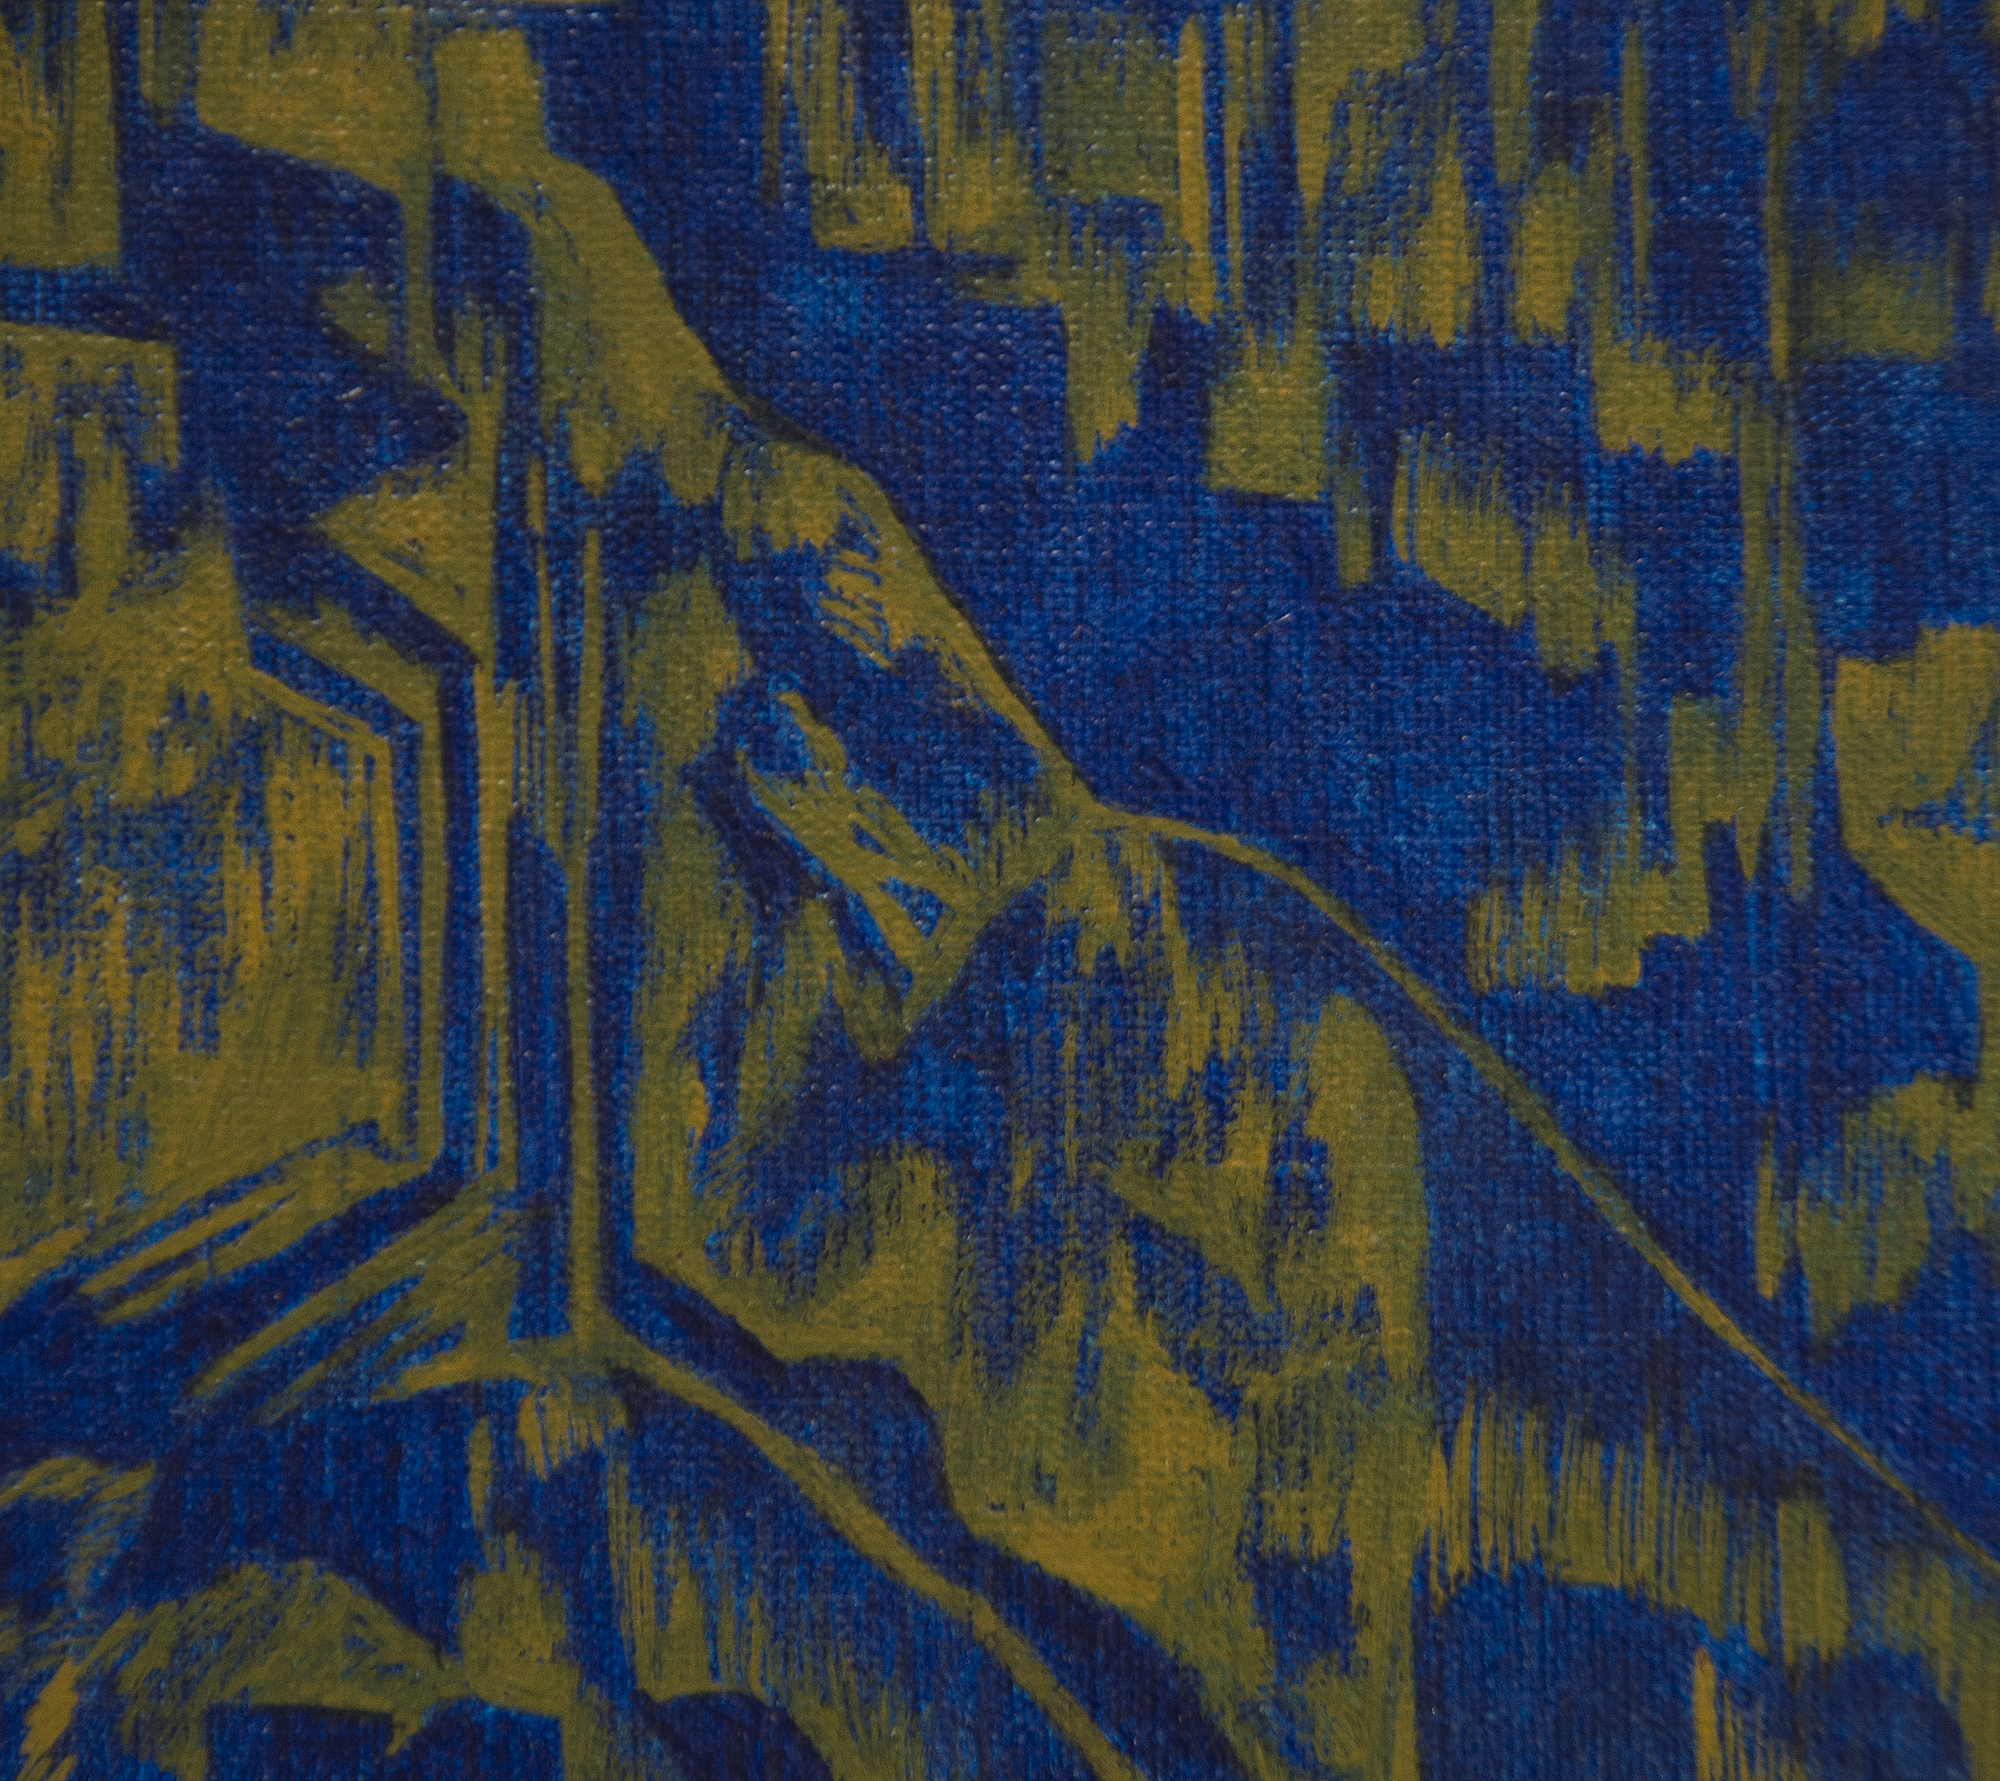 Les images miroirs d'une figure masquée embrassent un homme à poitrine nue et barbu, dont la stature relative est presque celle d'un enfant. Leur étreinte reflète celle de la Pieta de Michel-Ange et les nombreuses représentations similaires du Christ et de la Vierge. Une nuance de bleu foncé jette une ombre sur la composition, certes un indicateur temporel, mais peut-être aussi une référence à la période bleue de Picasso, une influence majeure sur l'œuvre de Pellegrini. Les panneaux muraux derrière les figures représentent des scènes religieuses et rappellent les murs de vitraux des églises et des chapelles. La lumière brille par les fenêtres de la ville en contrebas, également illuminée par la pleine lune qui surplombe les paysages montagneux.